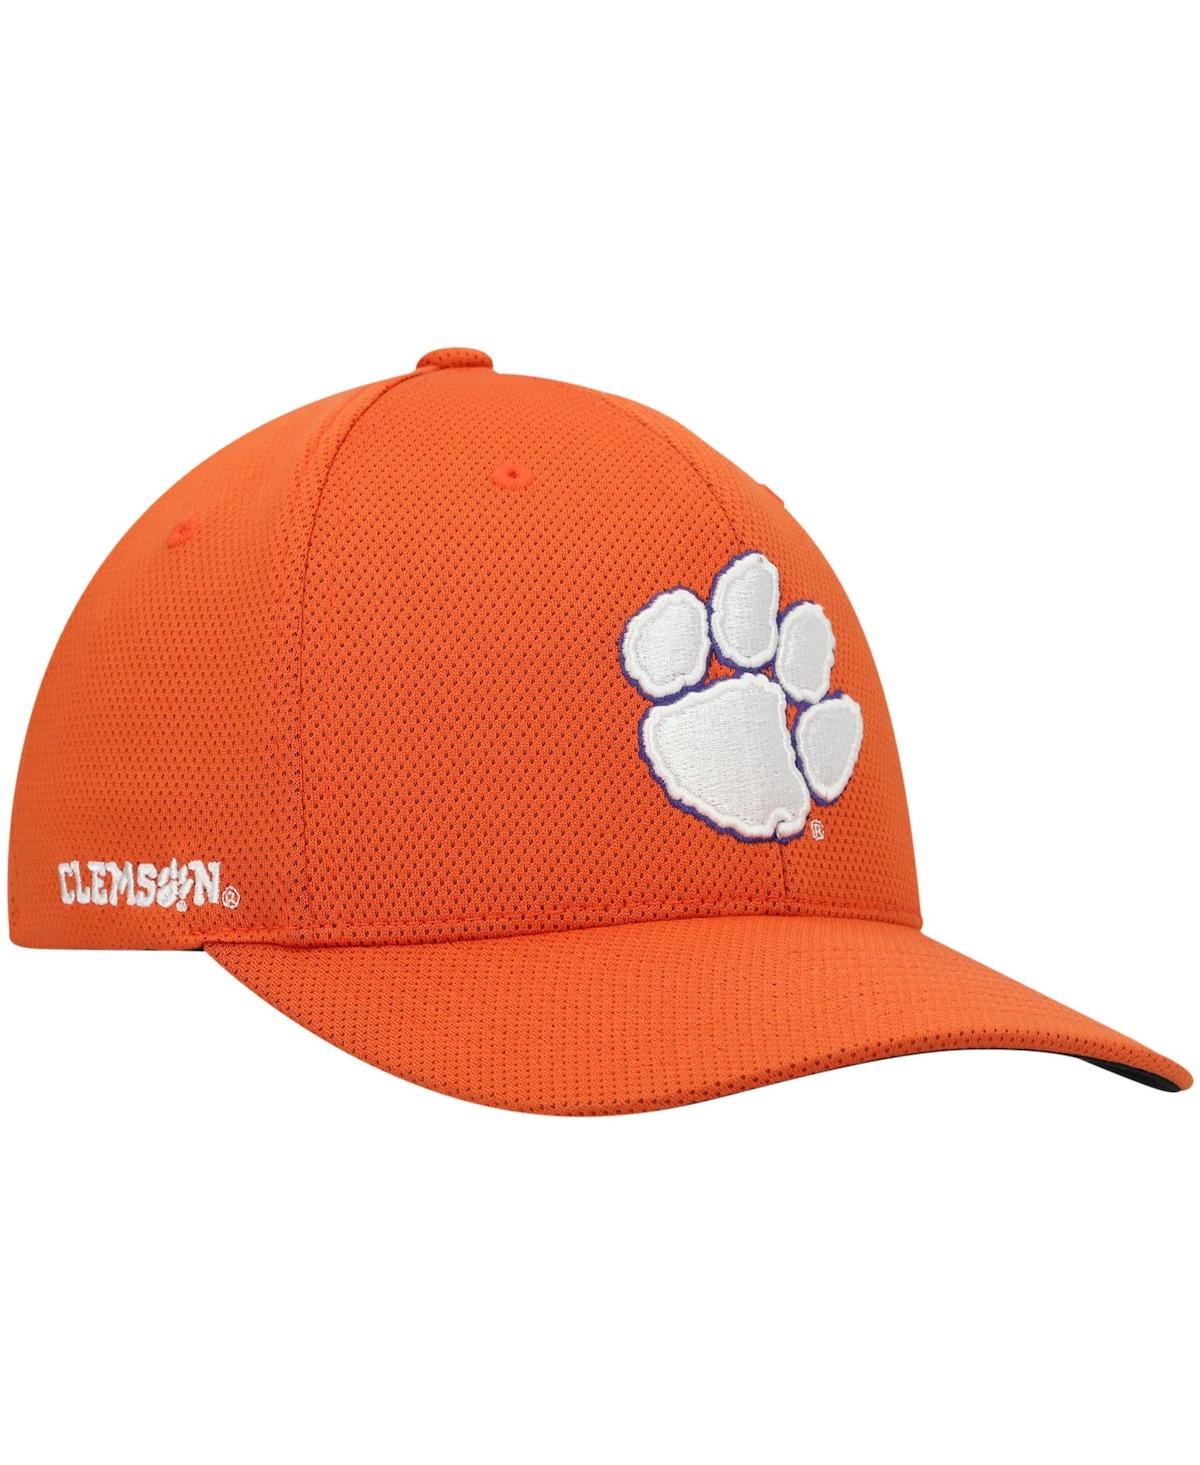 Shop Top Of The World Men's  Orange Clemson Tigers Reflex Logo Flex Hat